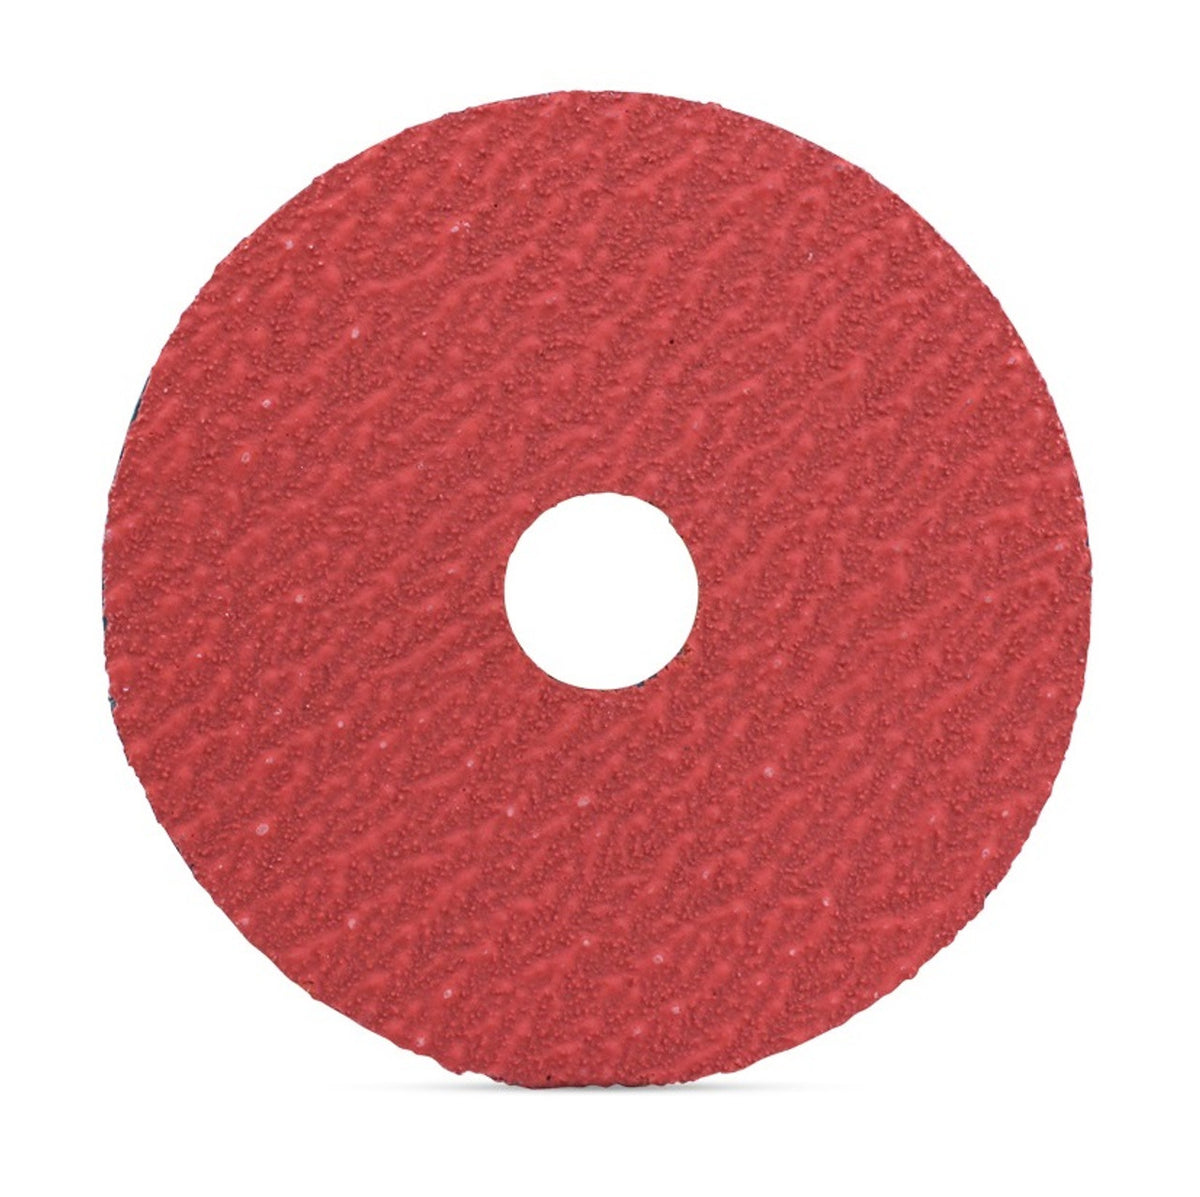 5" x 7/8" Ceramic Resin Fiber Sanding Discs